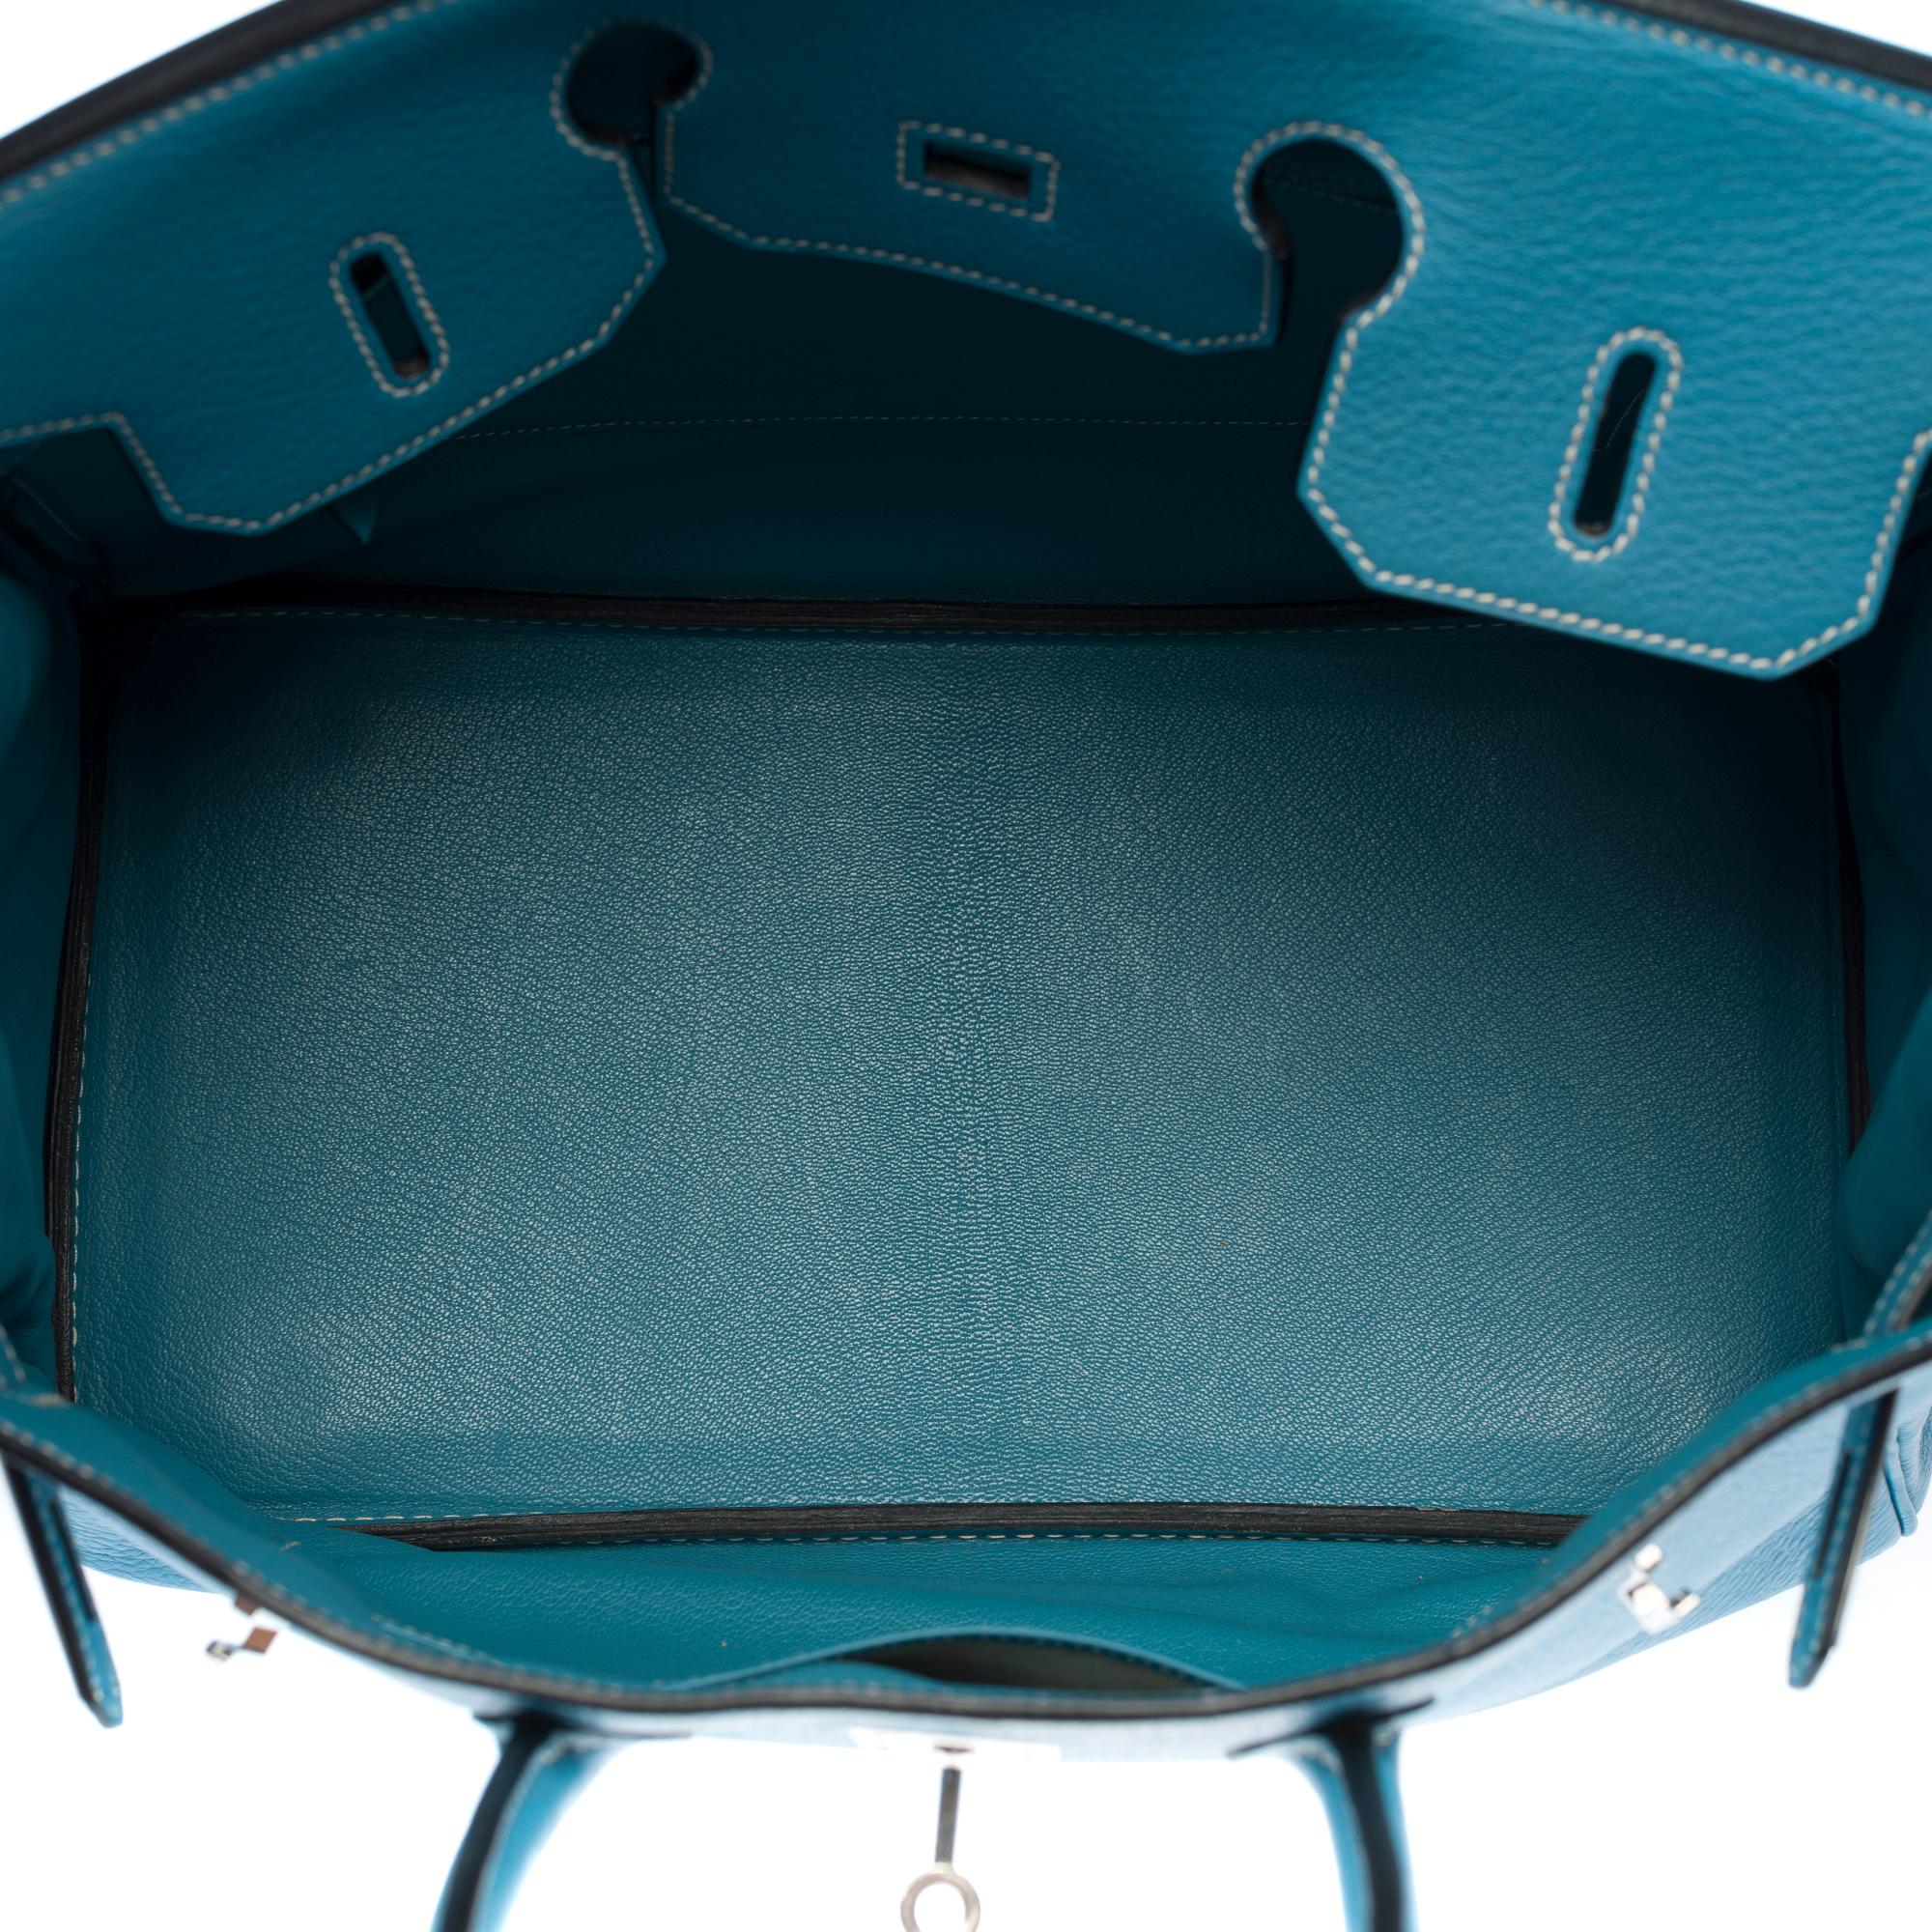 Stunning Hermes Birkin 40cm handbag in Blue Pétrole Togo leather, SHW 1